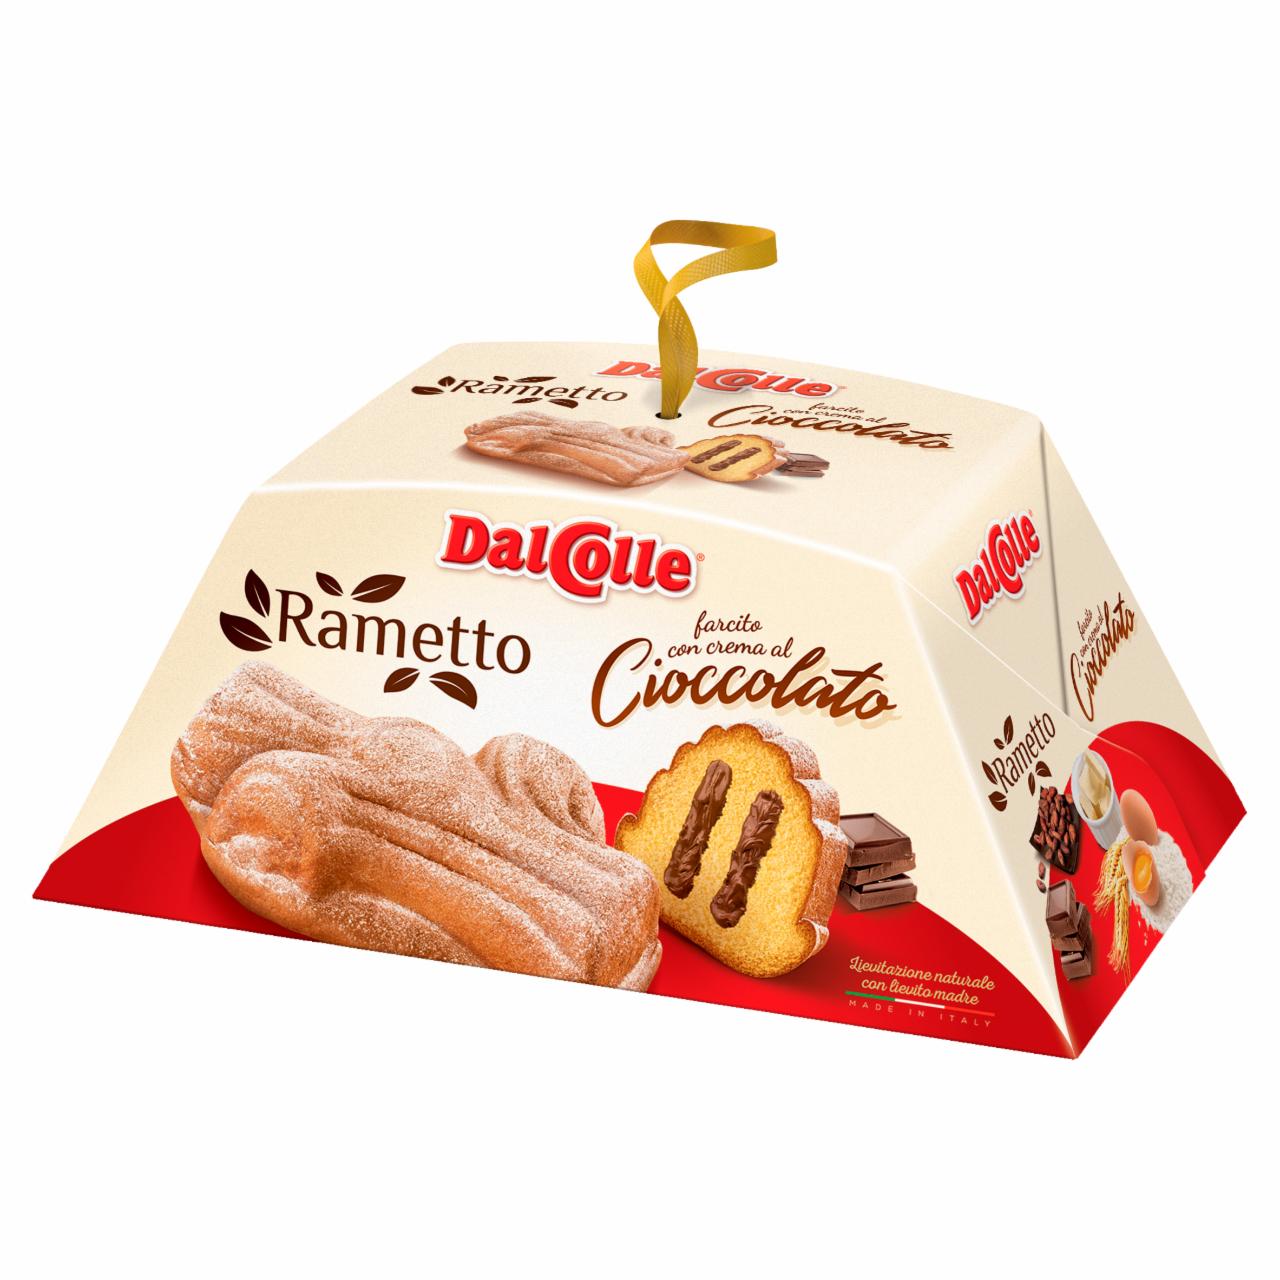 Képek - Dal Colle Rametto Cioccolato sütemény csokoládékrémmel töltve 300 g